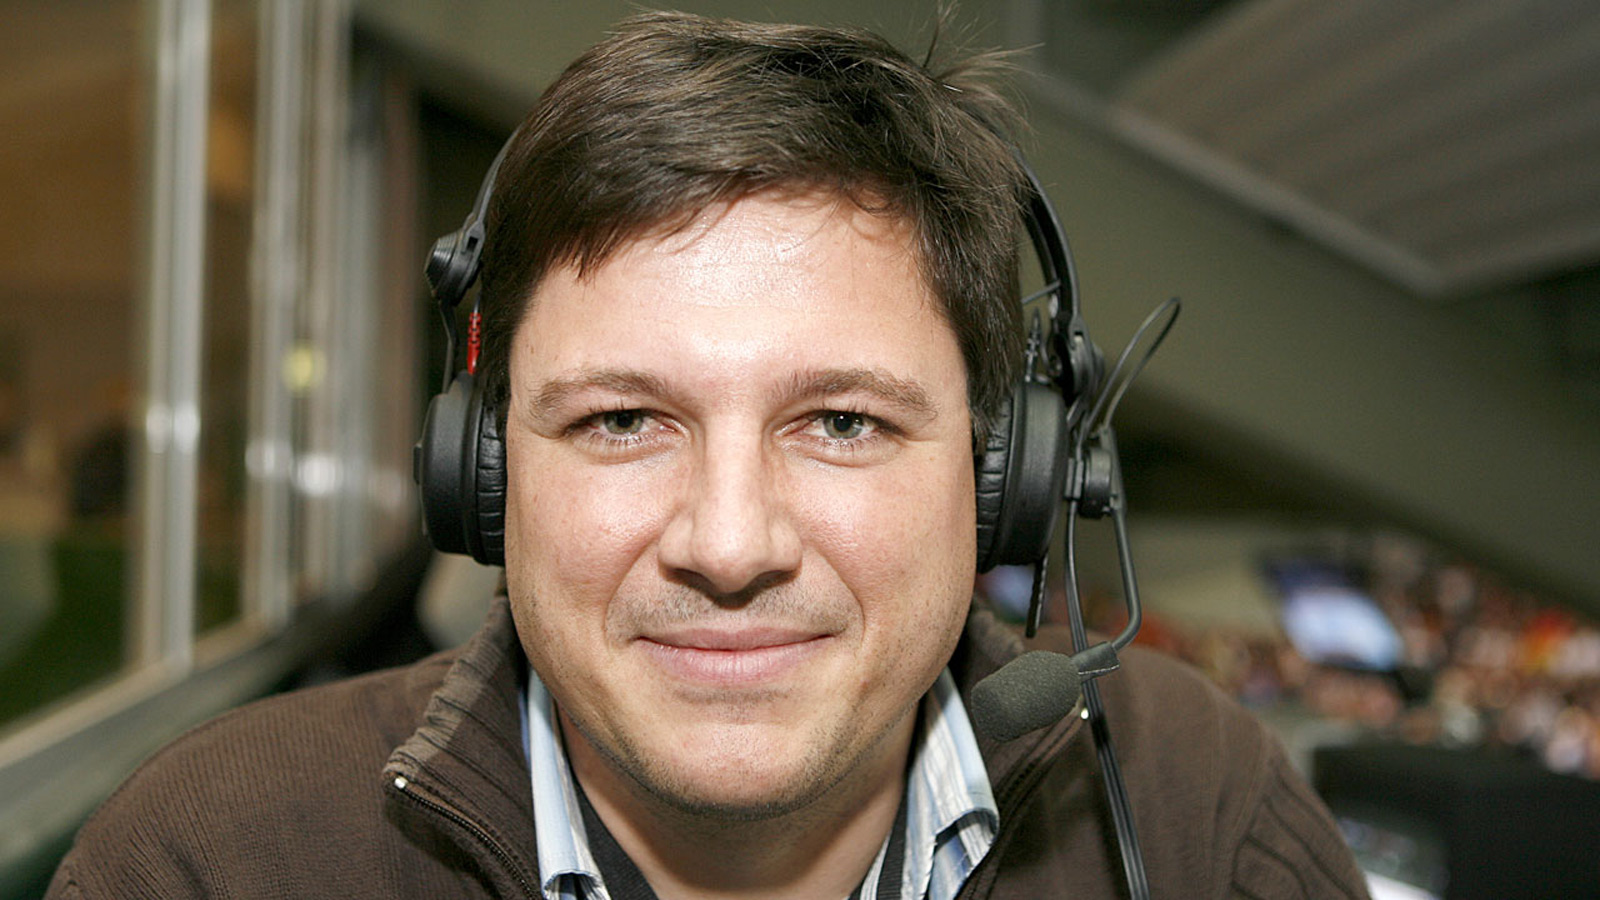 Sportschaukommentator Florian Naß